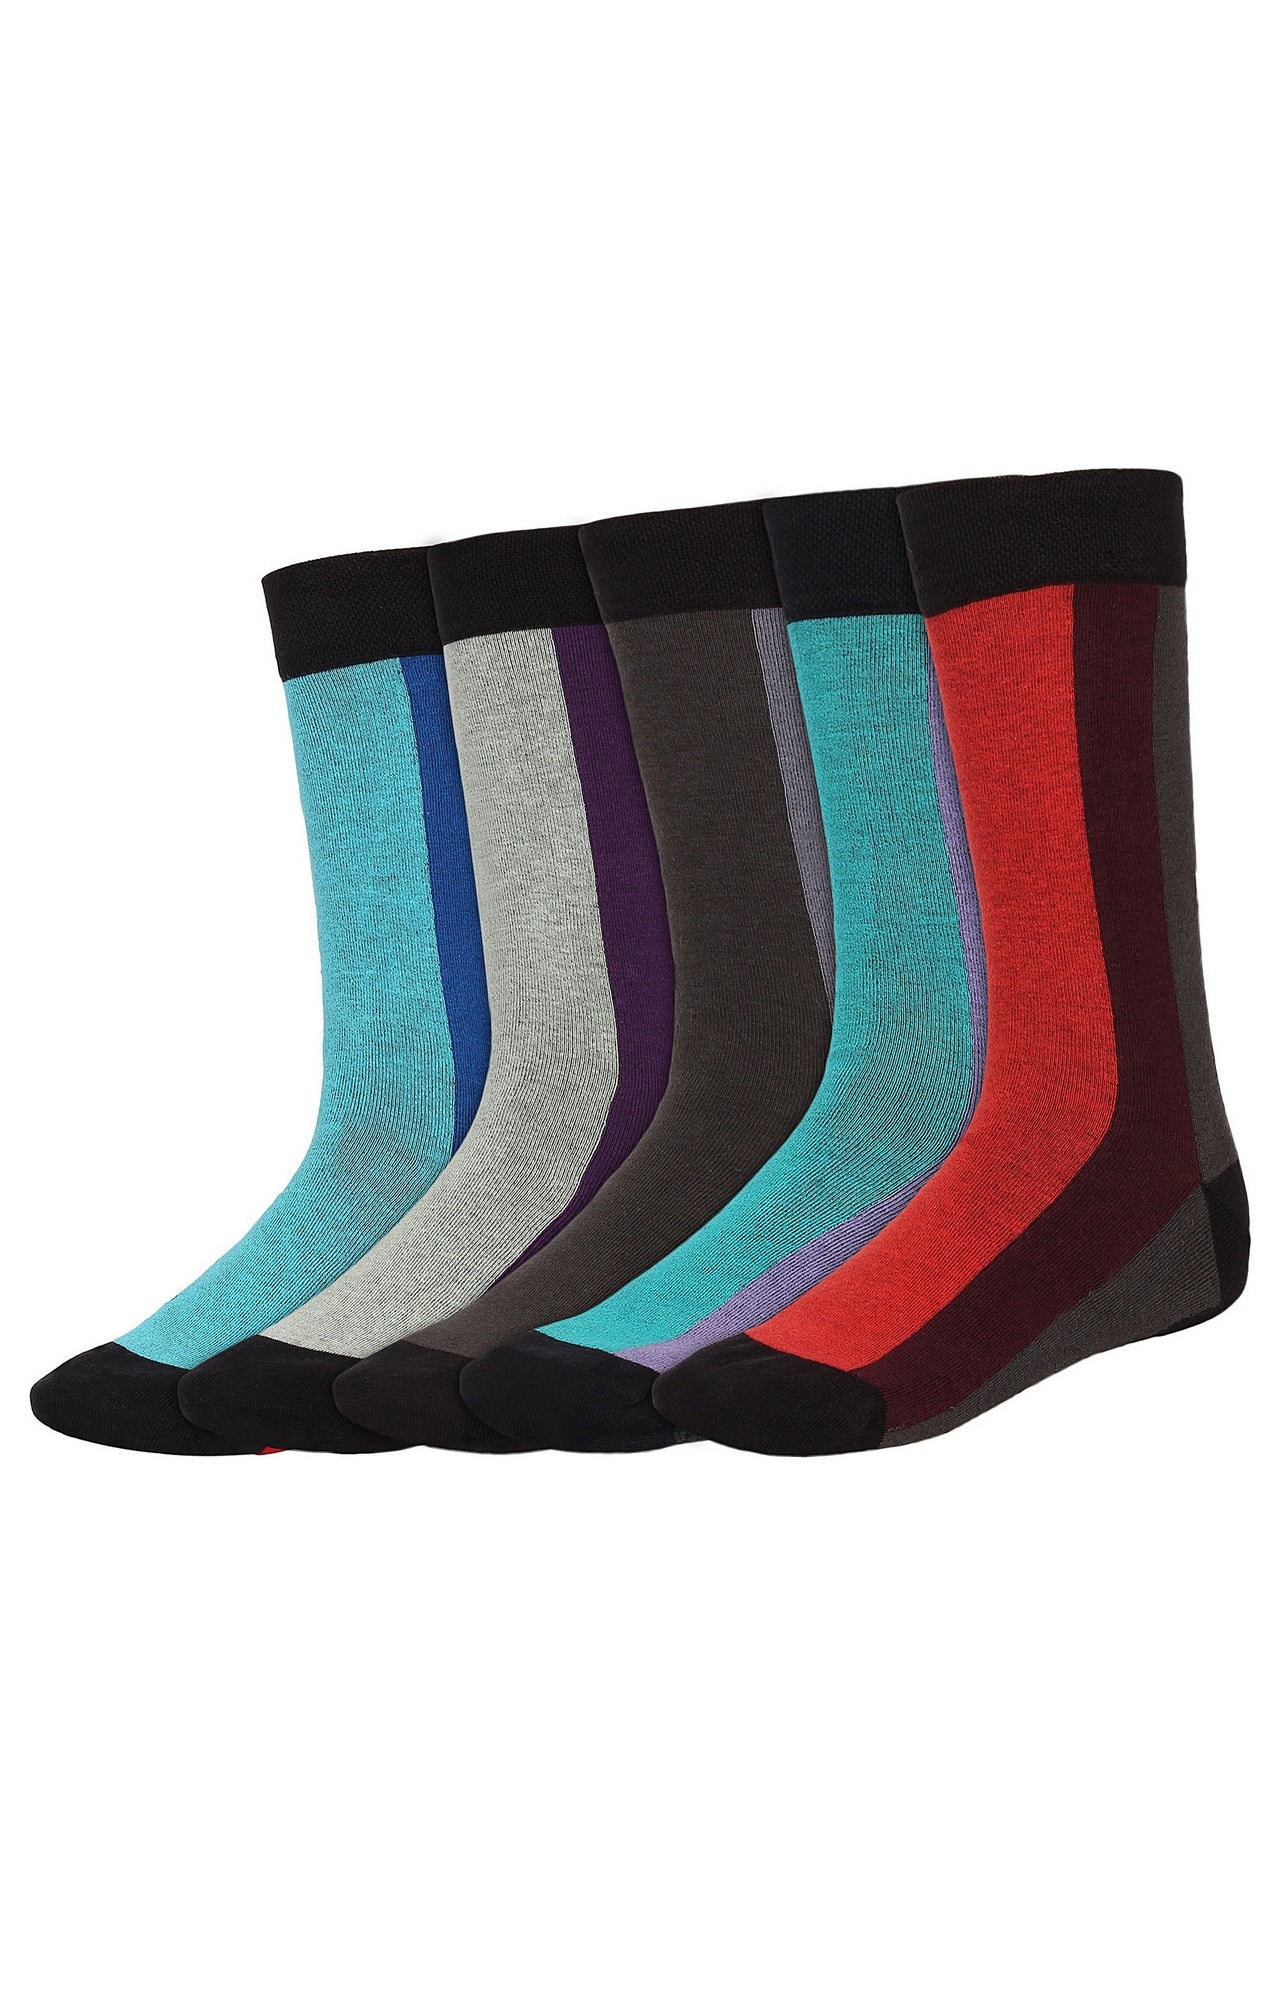 SIDEWOK | SIDEWOK Men Cotton Multicolour Socks - Pack of 5